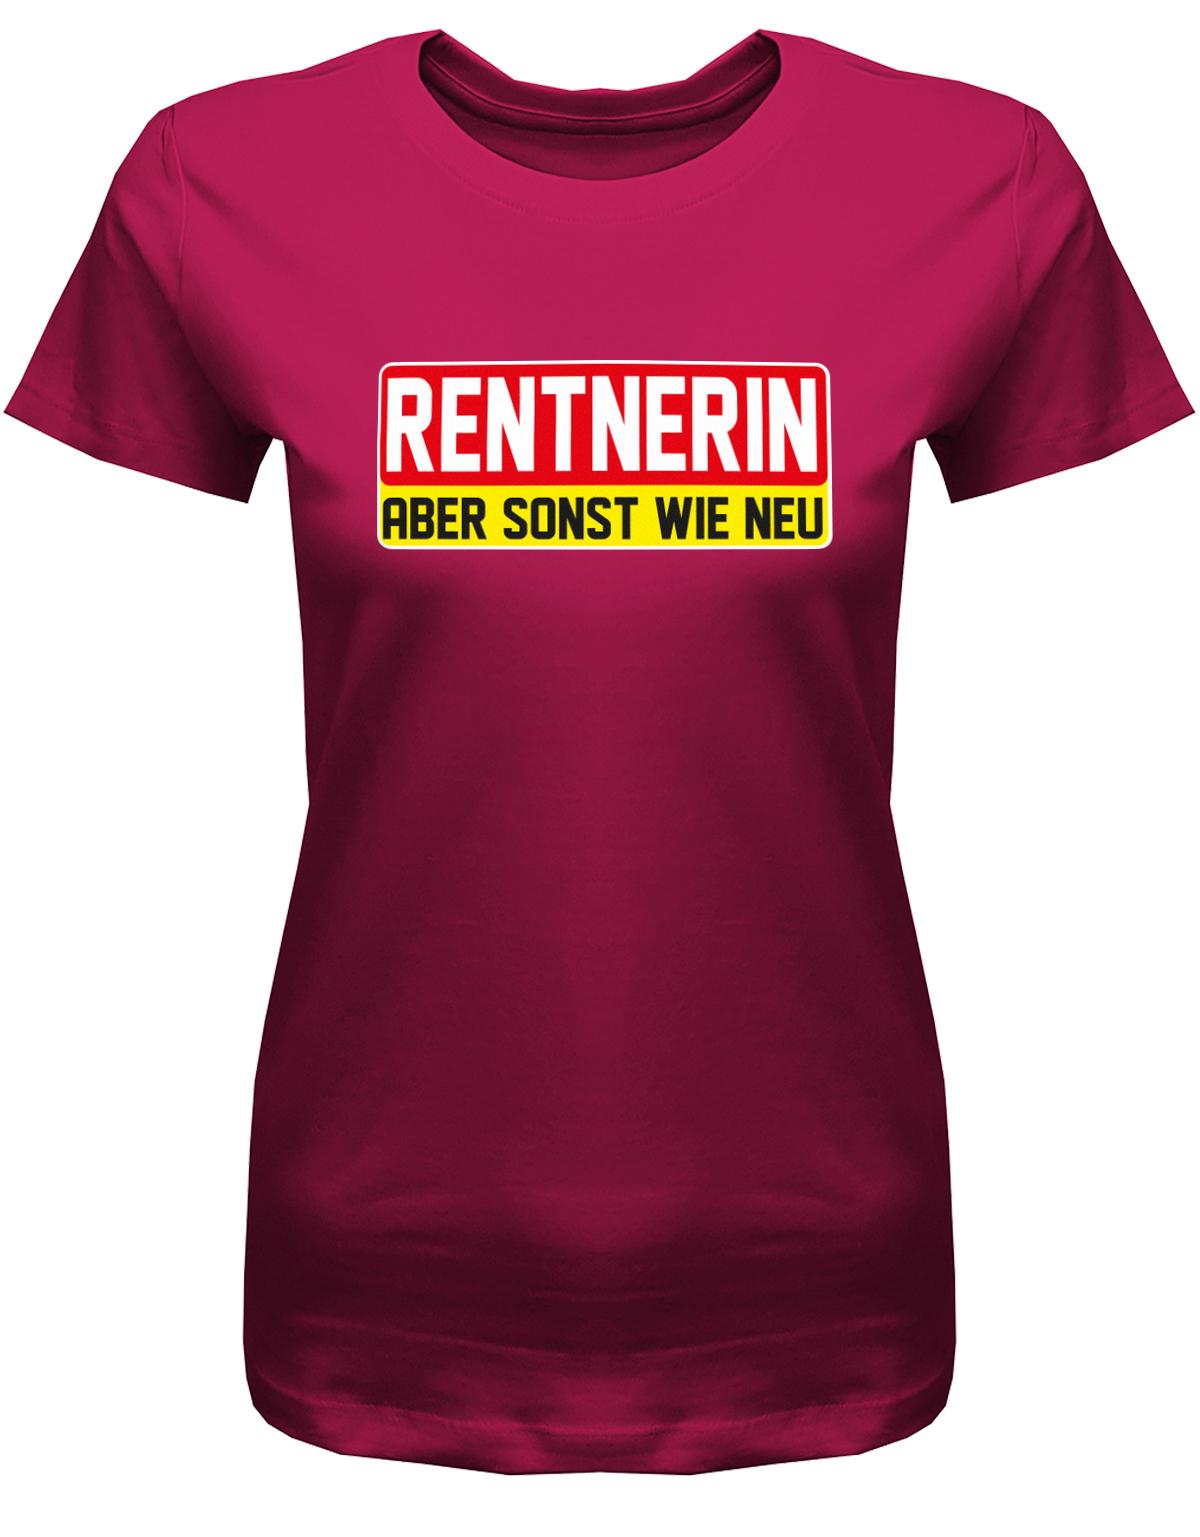 Rentnerin-aber-sonst-wie-neu-Damen-rente-Shirt-Sorbet